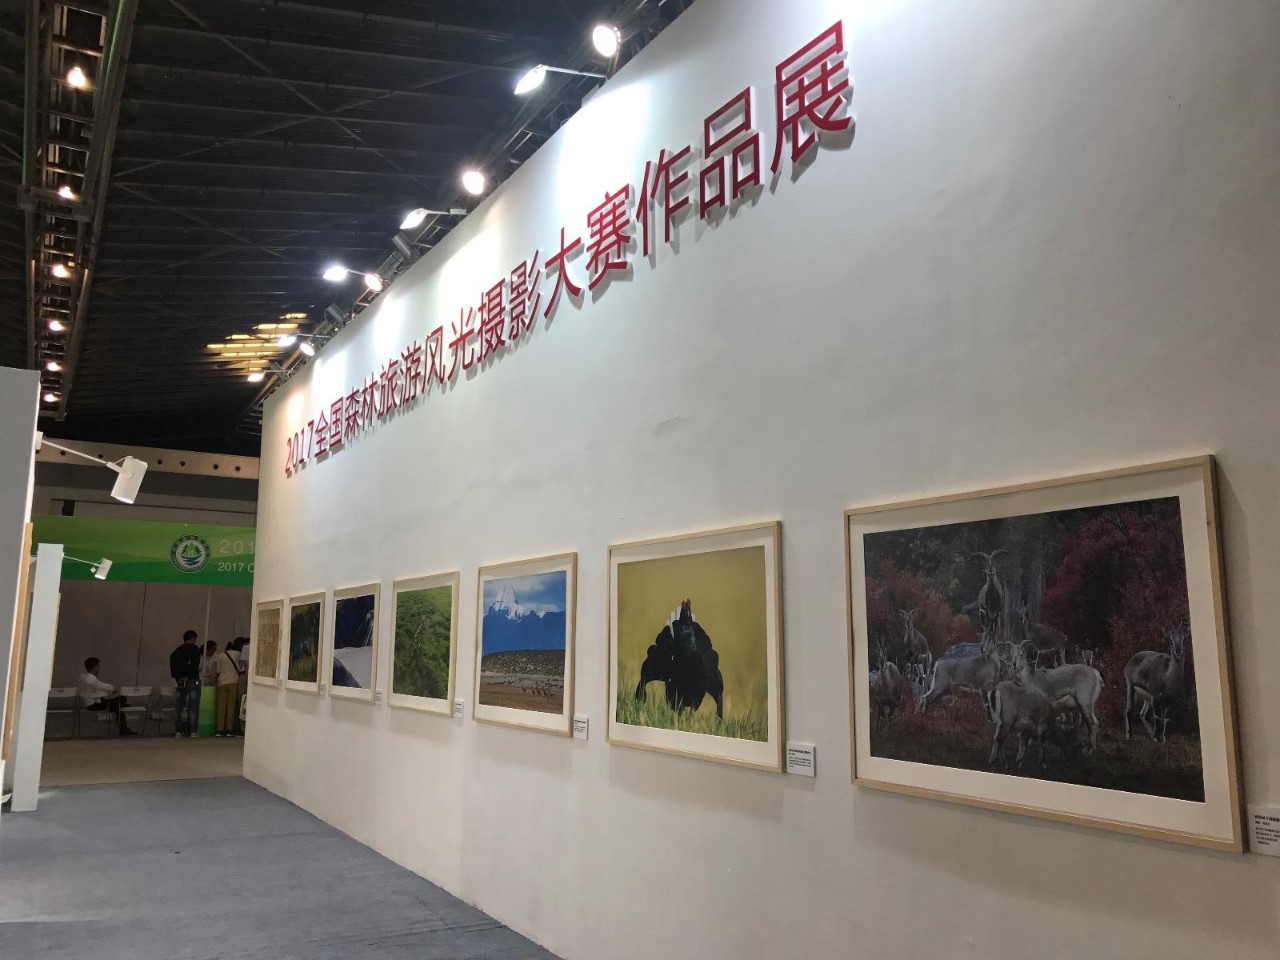 2017全国森林旅游风光摄影大赛的获奖作品也在展馆中展出。4